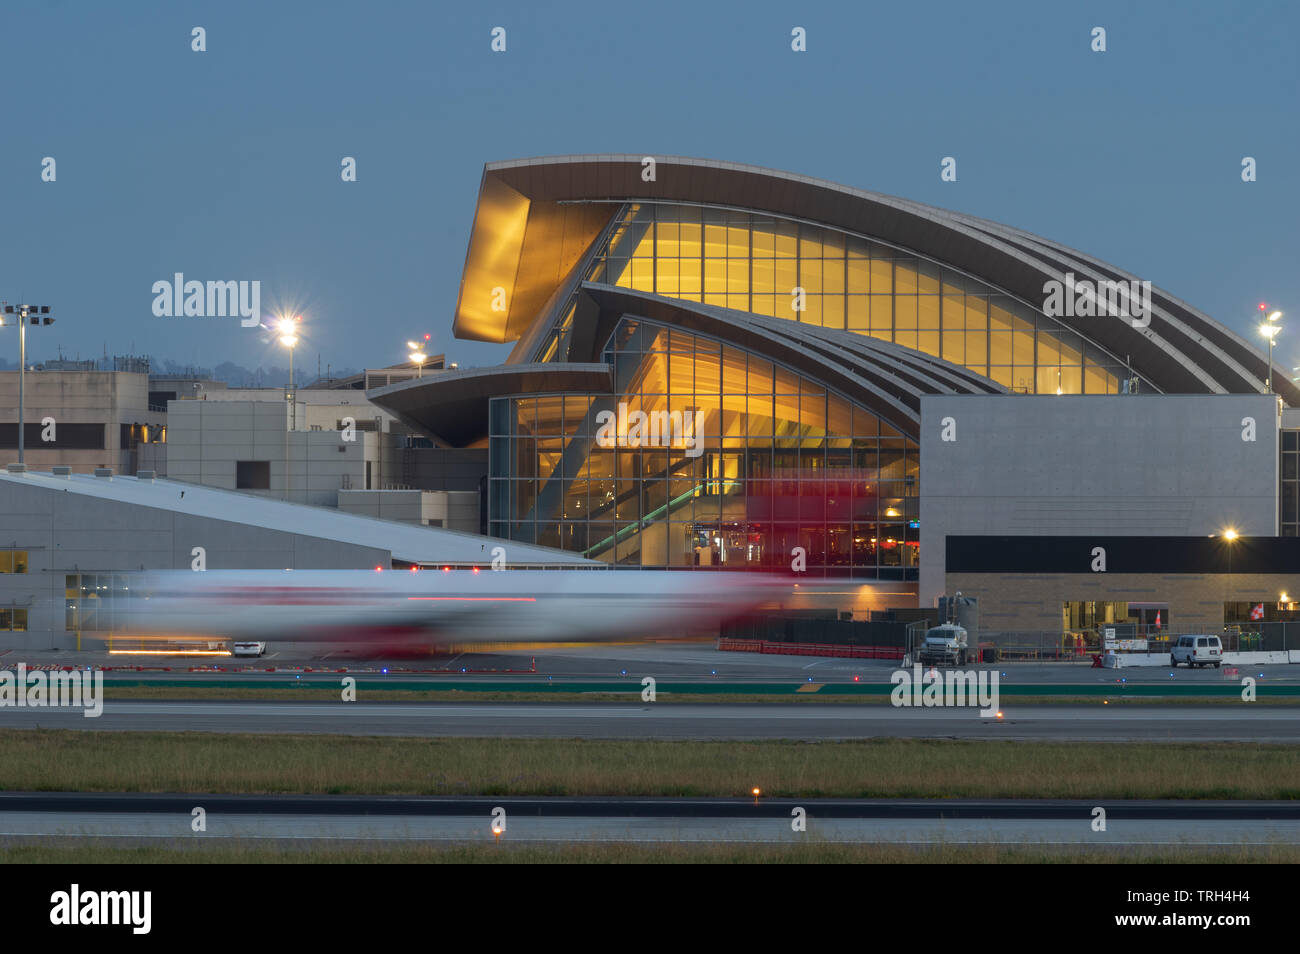 Terminal Tom Bradley en LAX, el Aeropuerto Internacional de Los Angeles. Twilight escena. Foto de stock